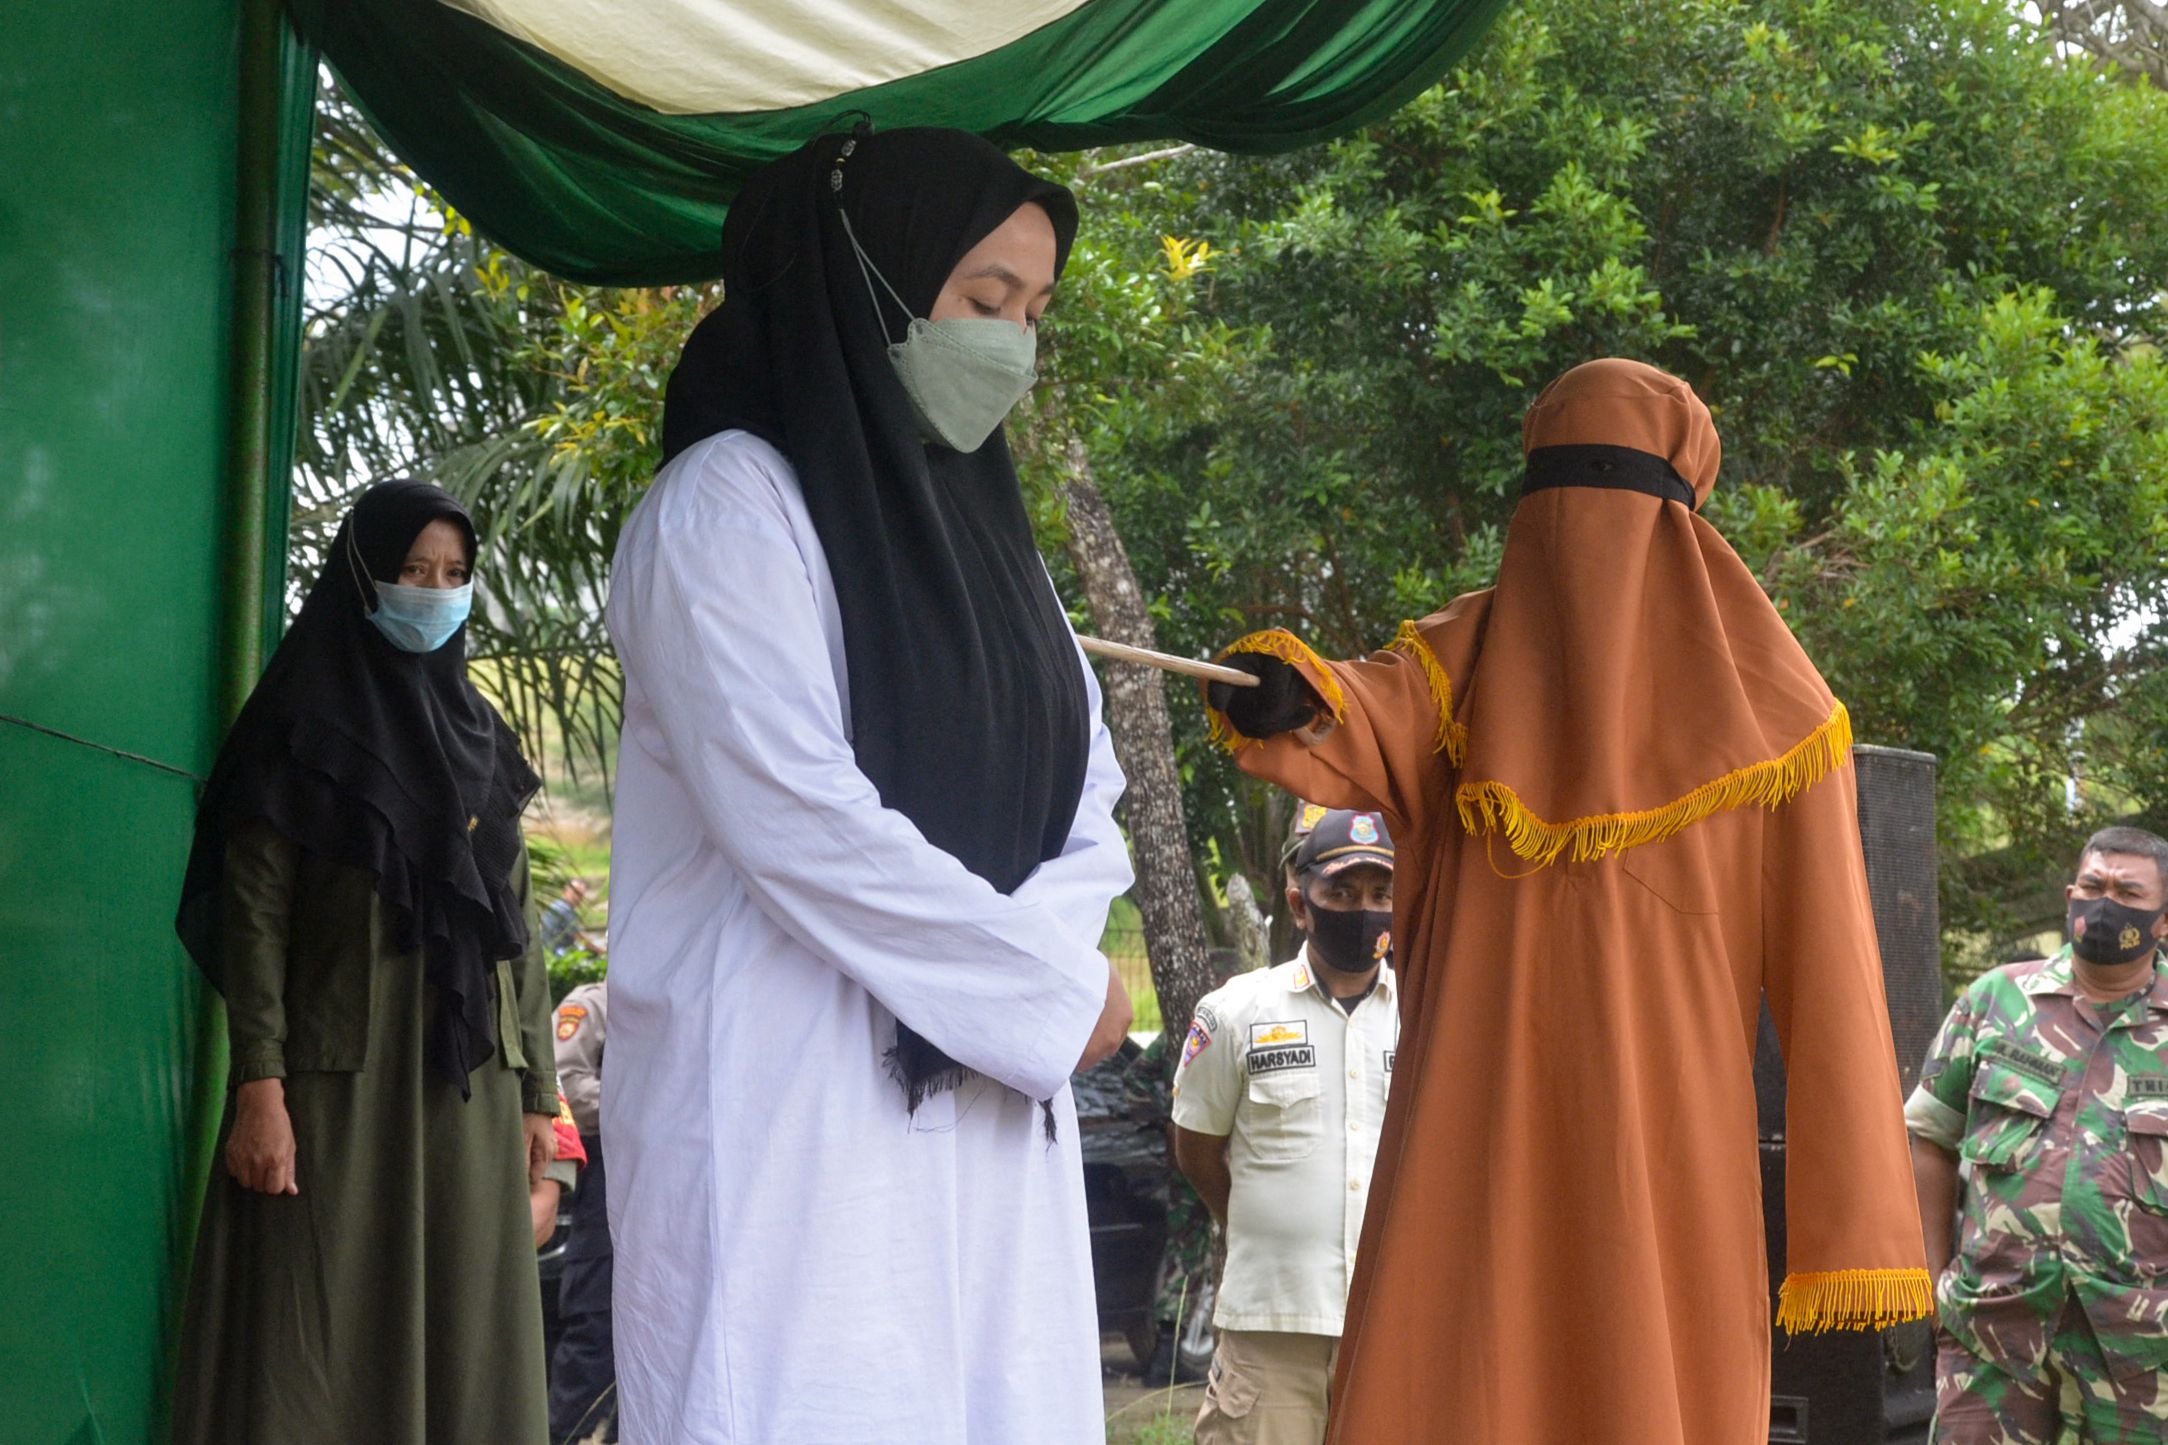 Una mujer recibe 100 azotes por adulterio en la provincia conservadora de East Ace de Indonesia